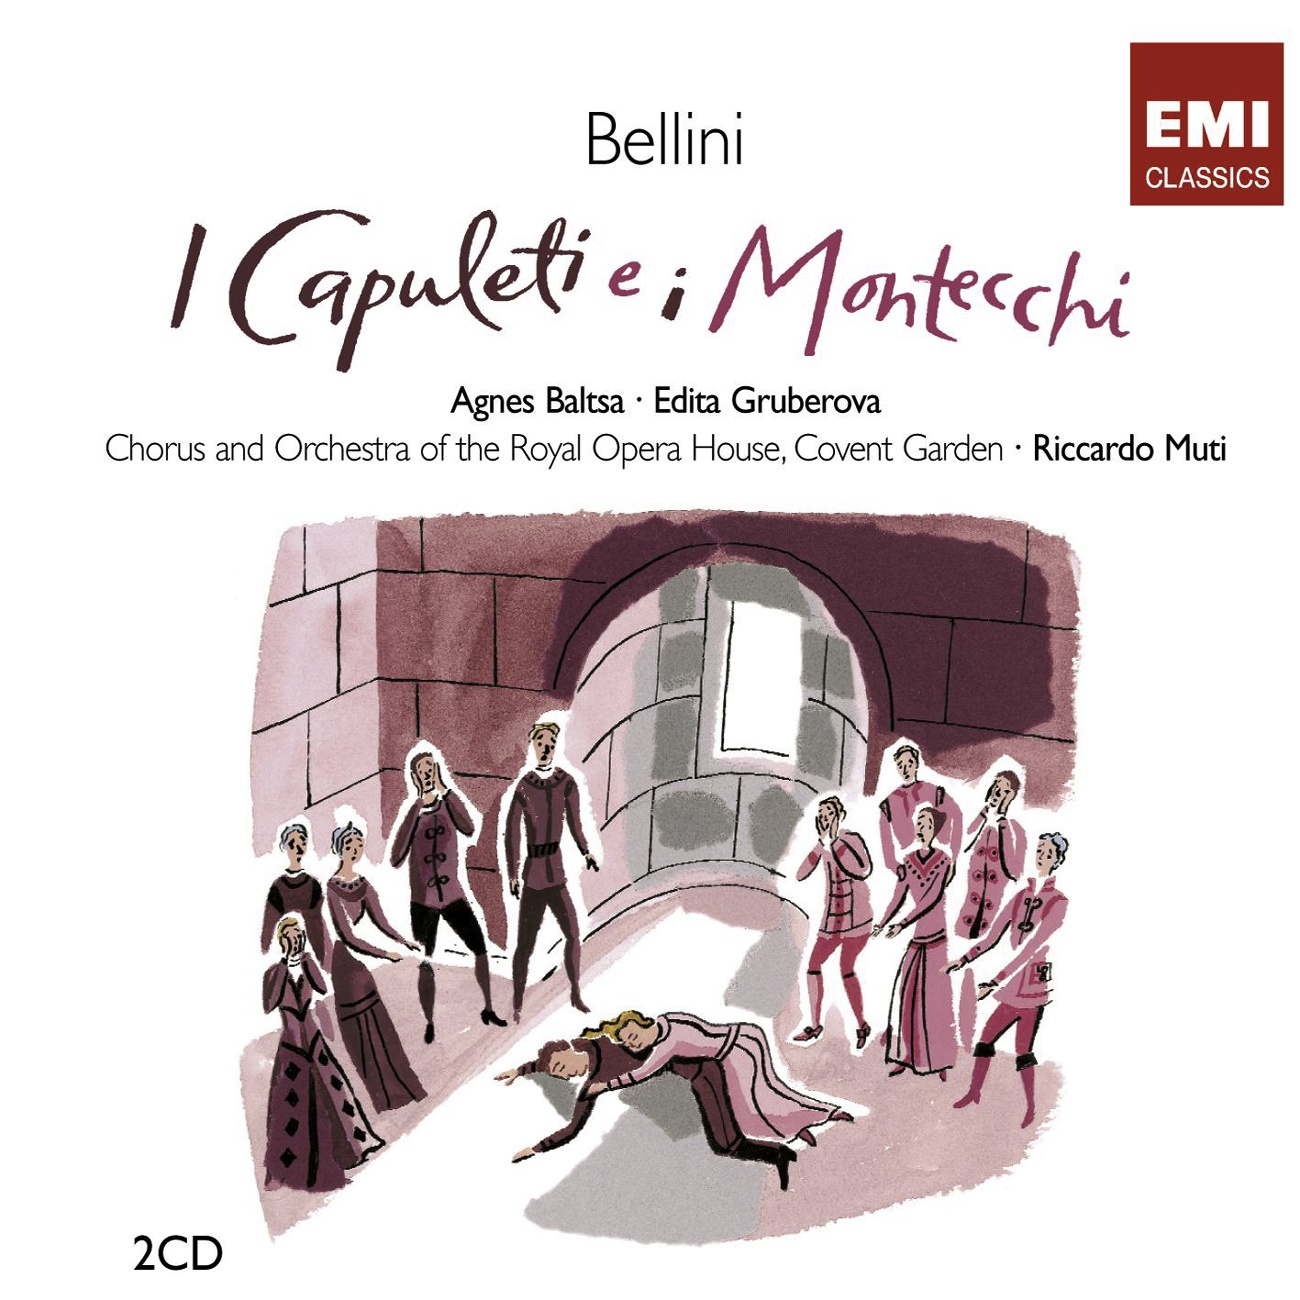 I Capuleti e i Montecchi, ATTO SECONDO Scene 1: Morte io non tremo il sai (Giulietta/Romeo)